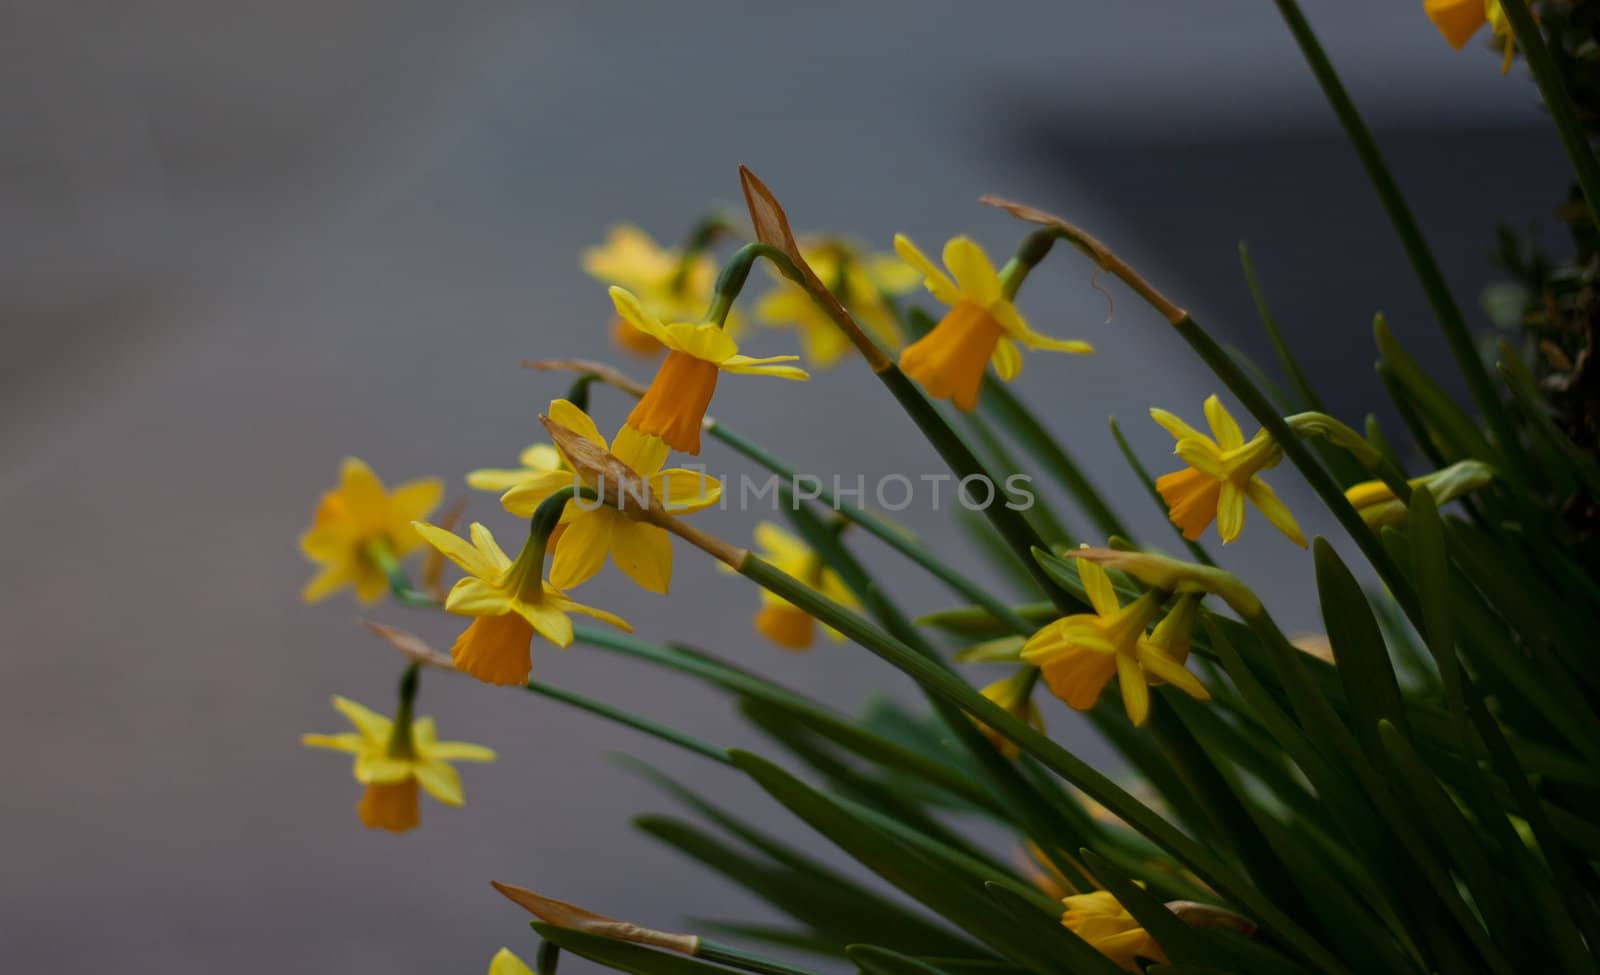 Closeup macro shot of a yellow flowers shot in a city.